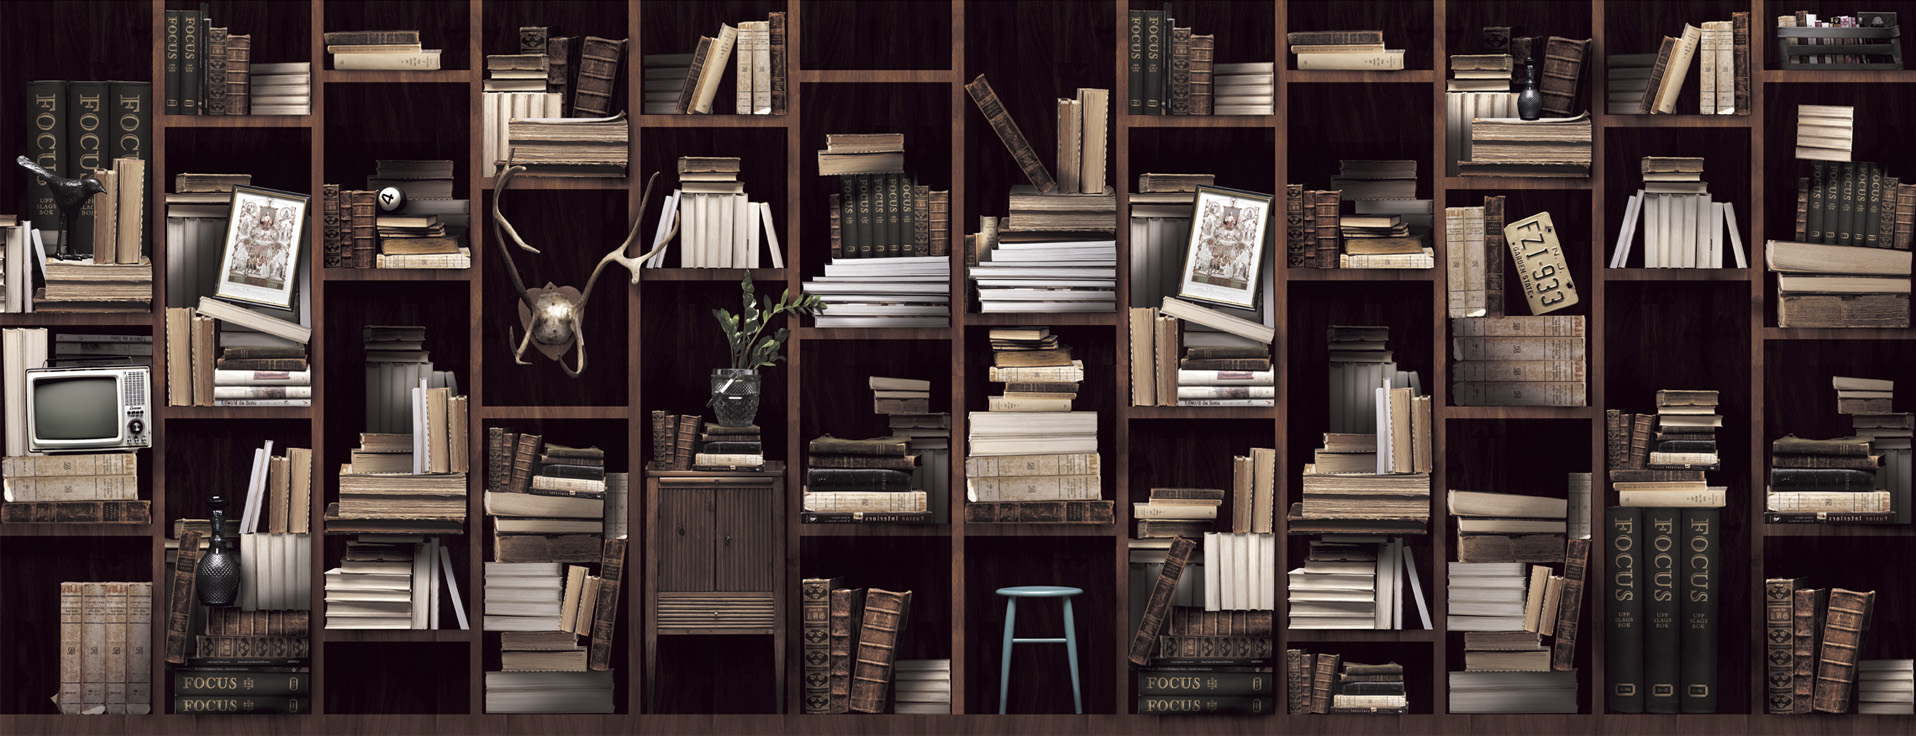 Bookshelf Bookshelves Wallpaper With Inspiration From Alice In